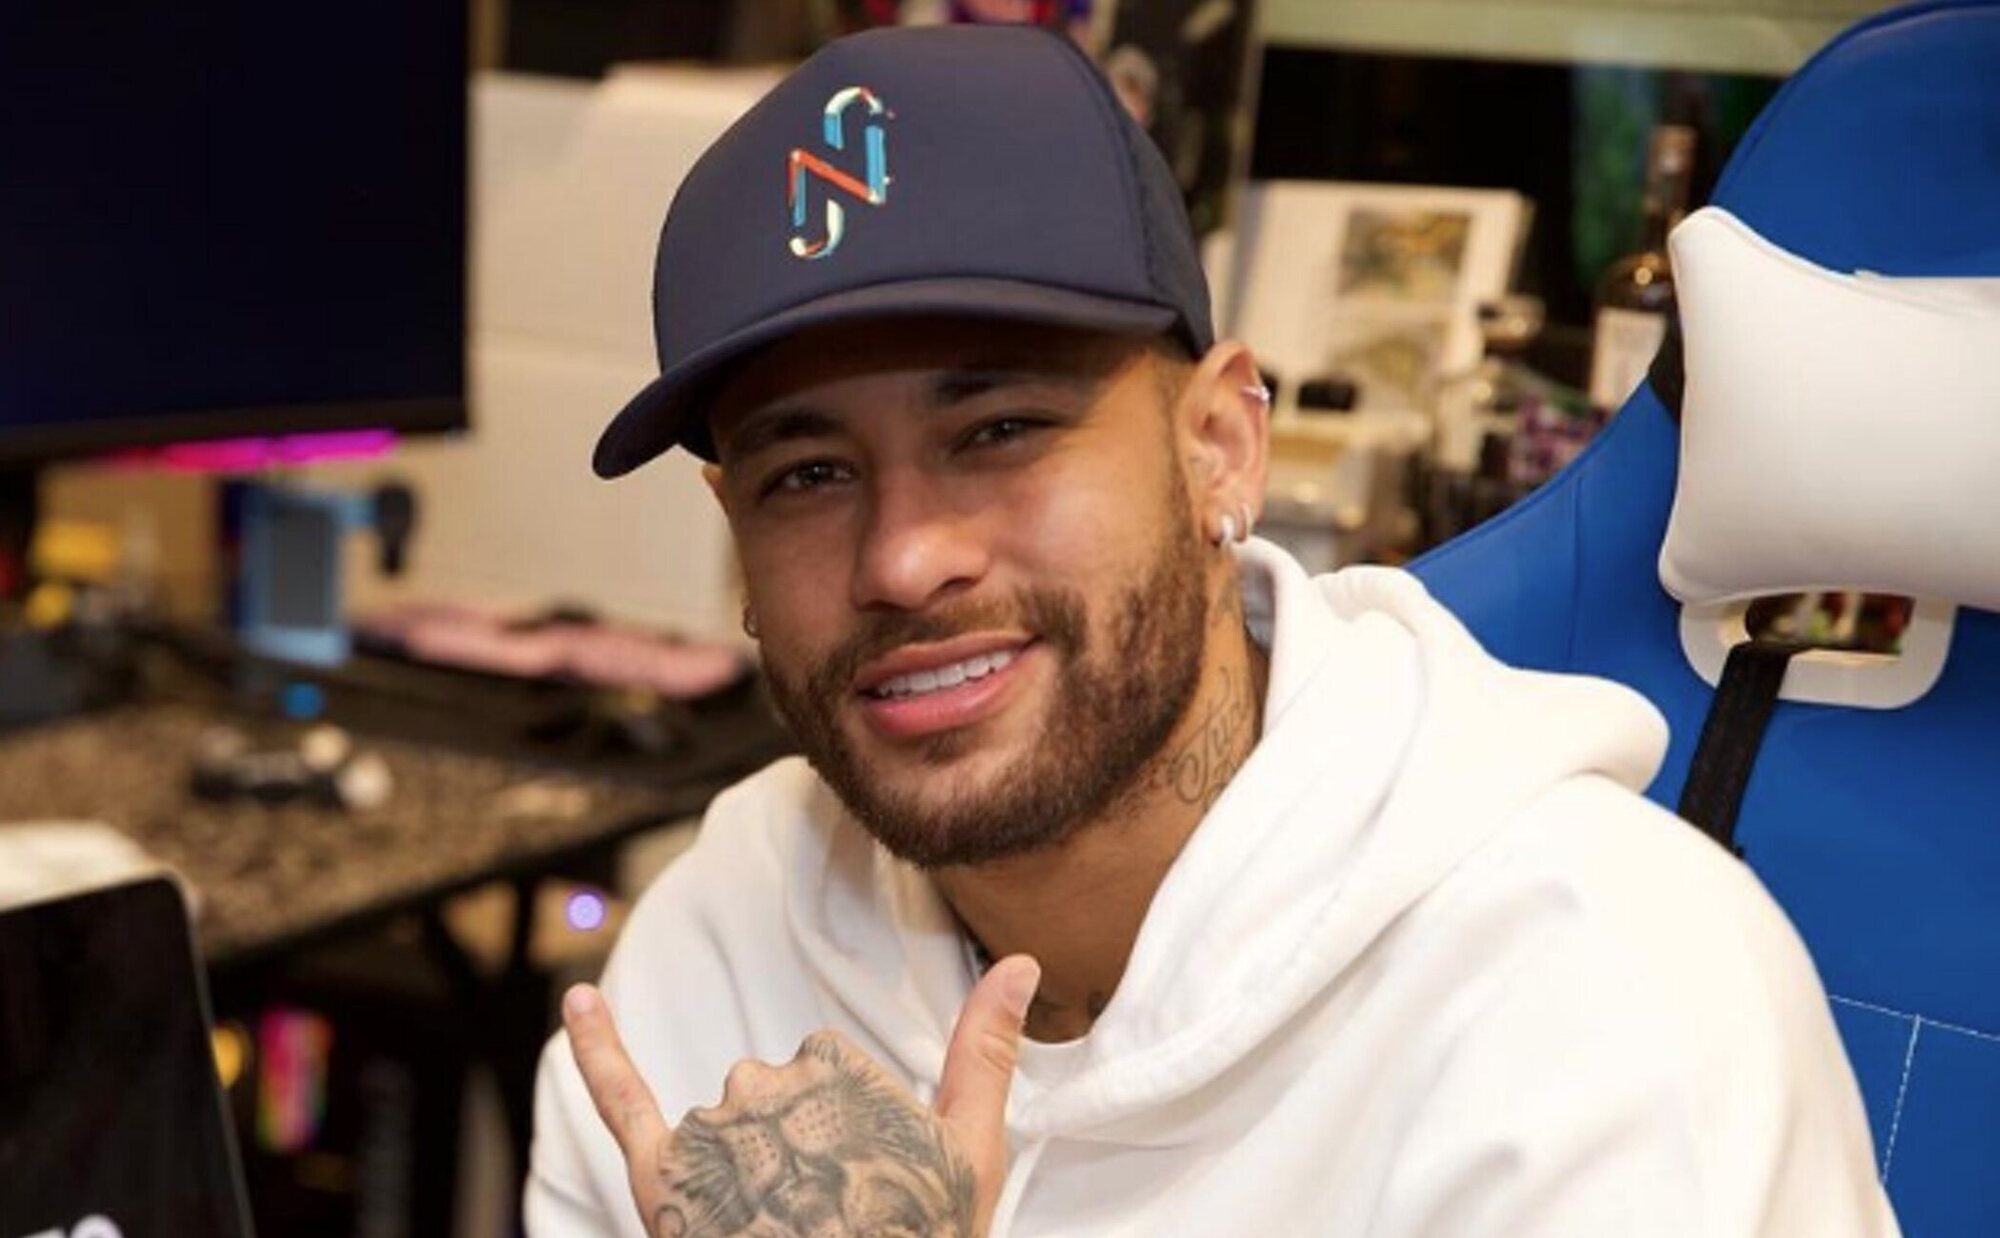 Una modelo, sobre Neymar: "Estoy cansada de que me escriba teniendo novia"